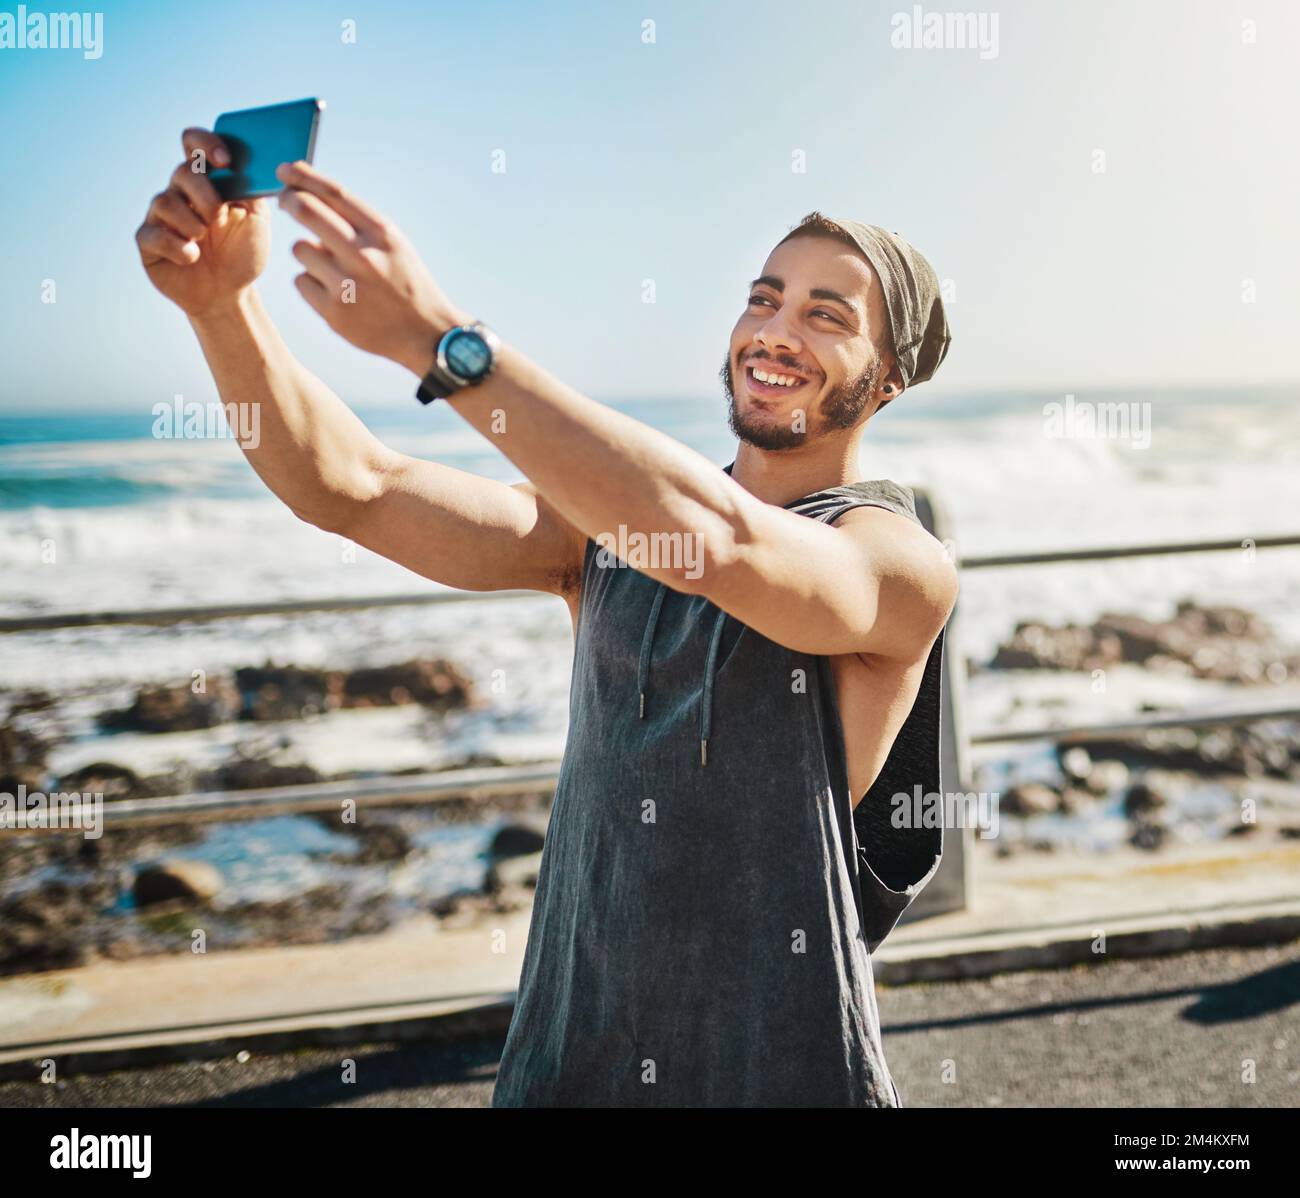 Je vous donne quelques conseils de fitness en ligne. un homme qui prend un selfie alors qu'il est en train de courir sur la promenade. Banque D'Images